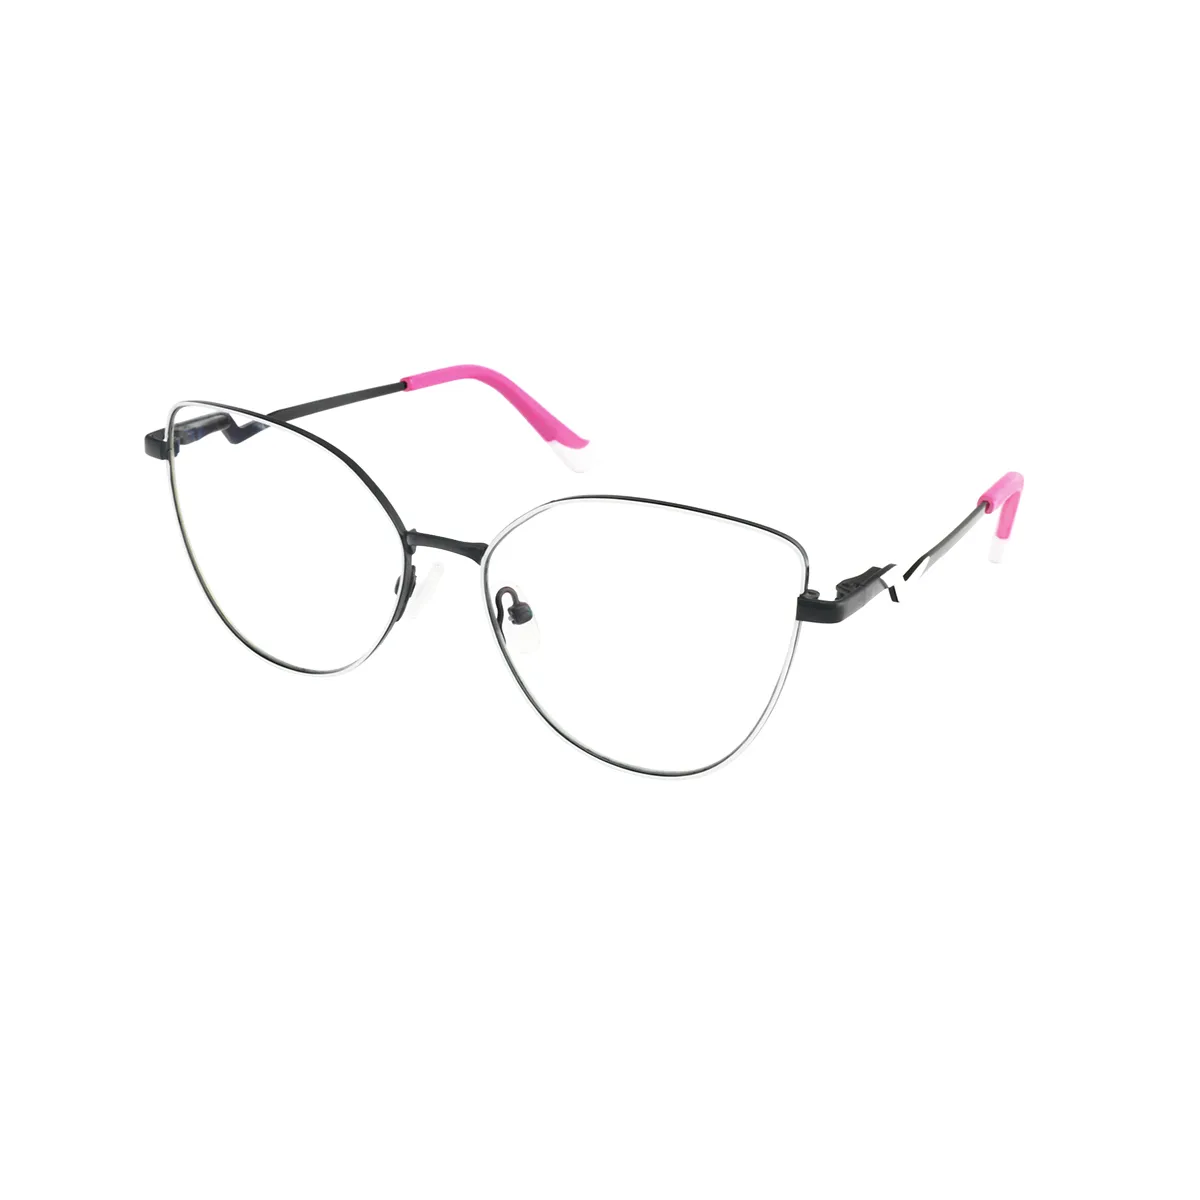 Alvina - Cat-eye Clear-Black Glasses for Women